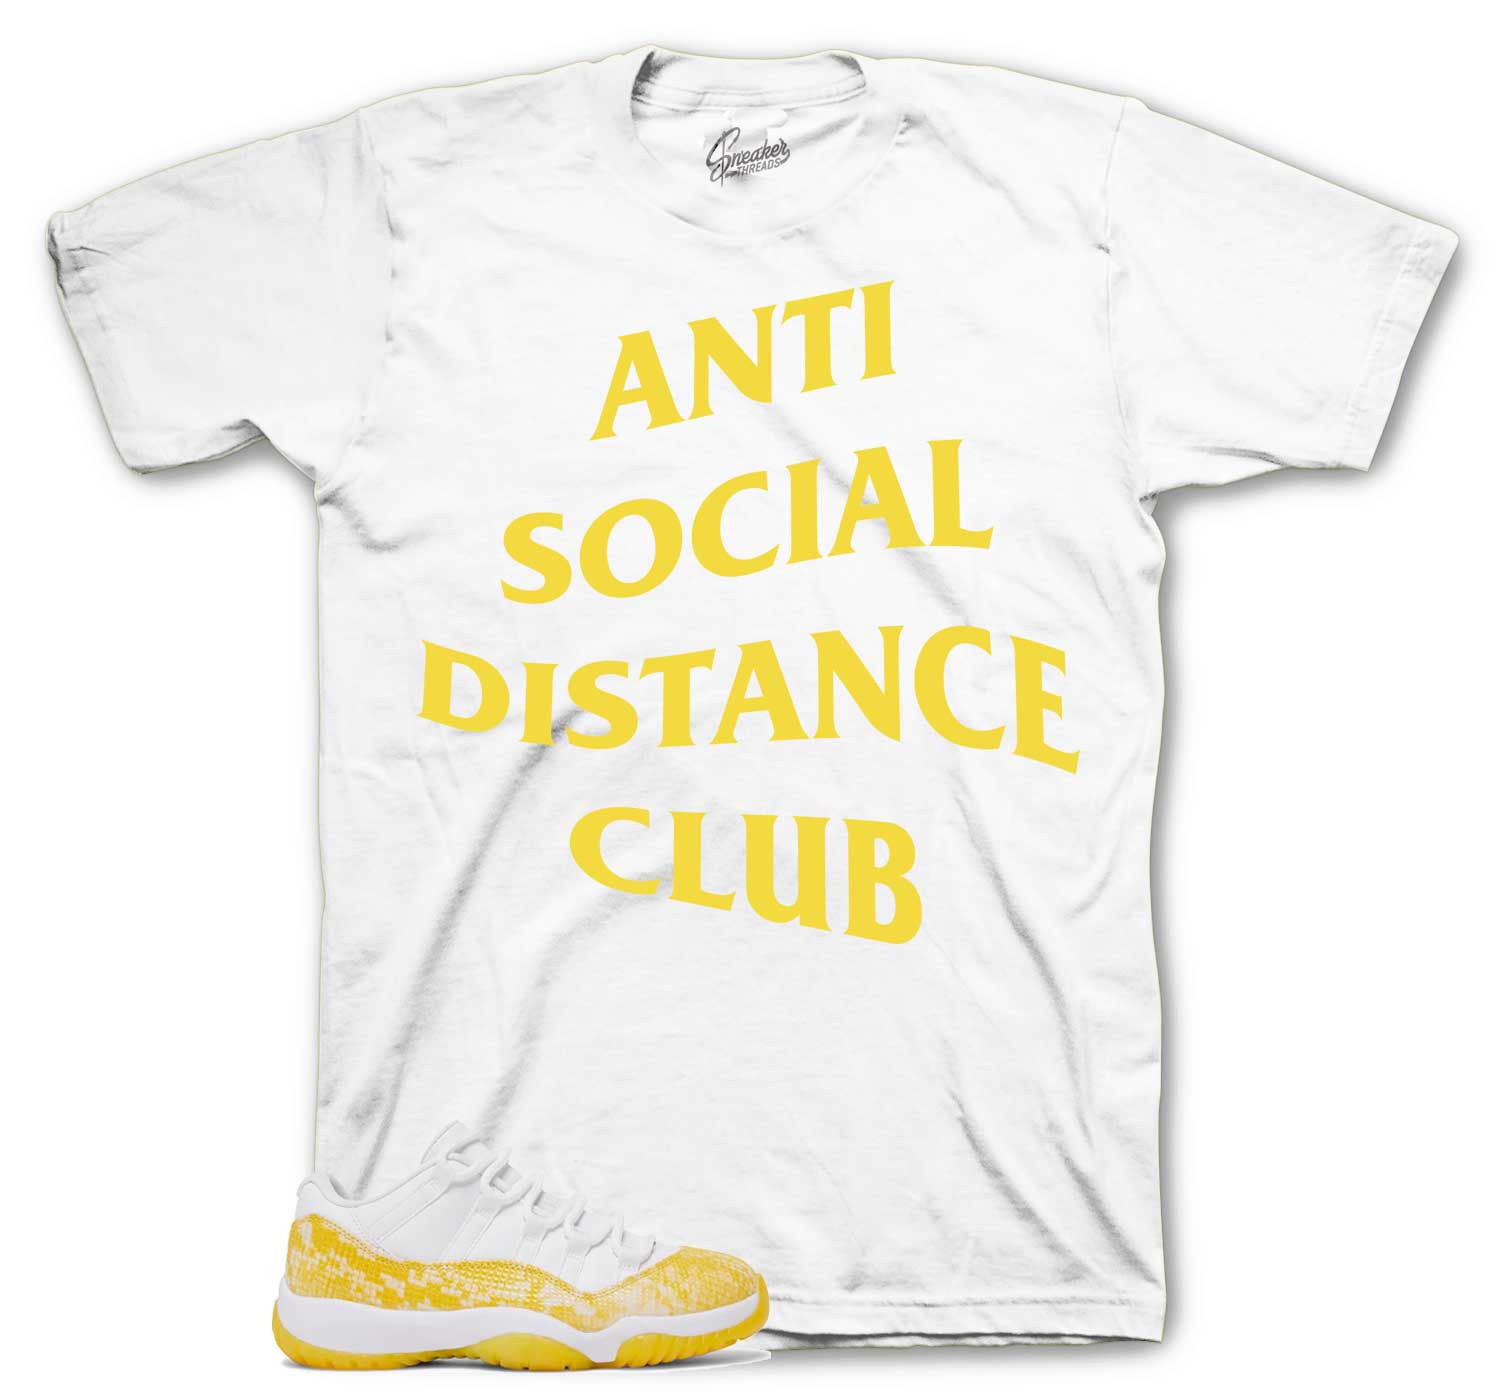 Retro 11 Yellow Snakeskin Shirt - Scoail Distance - White